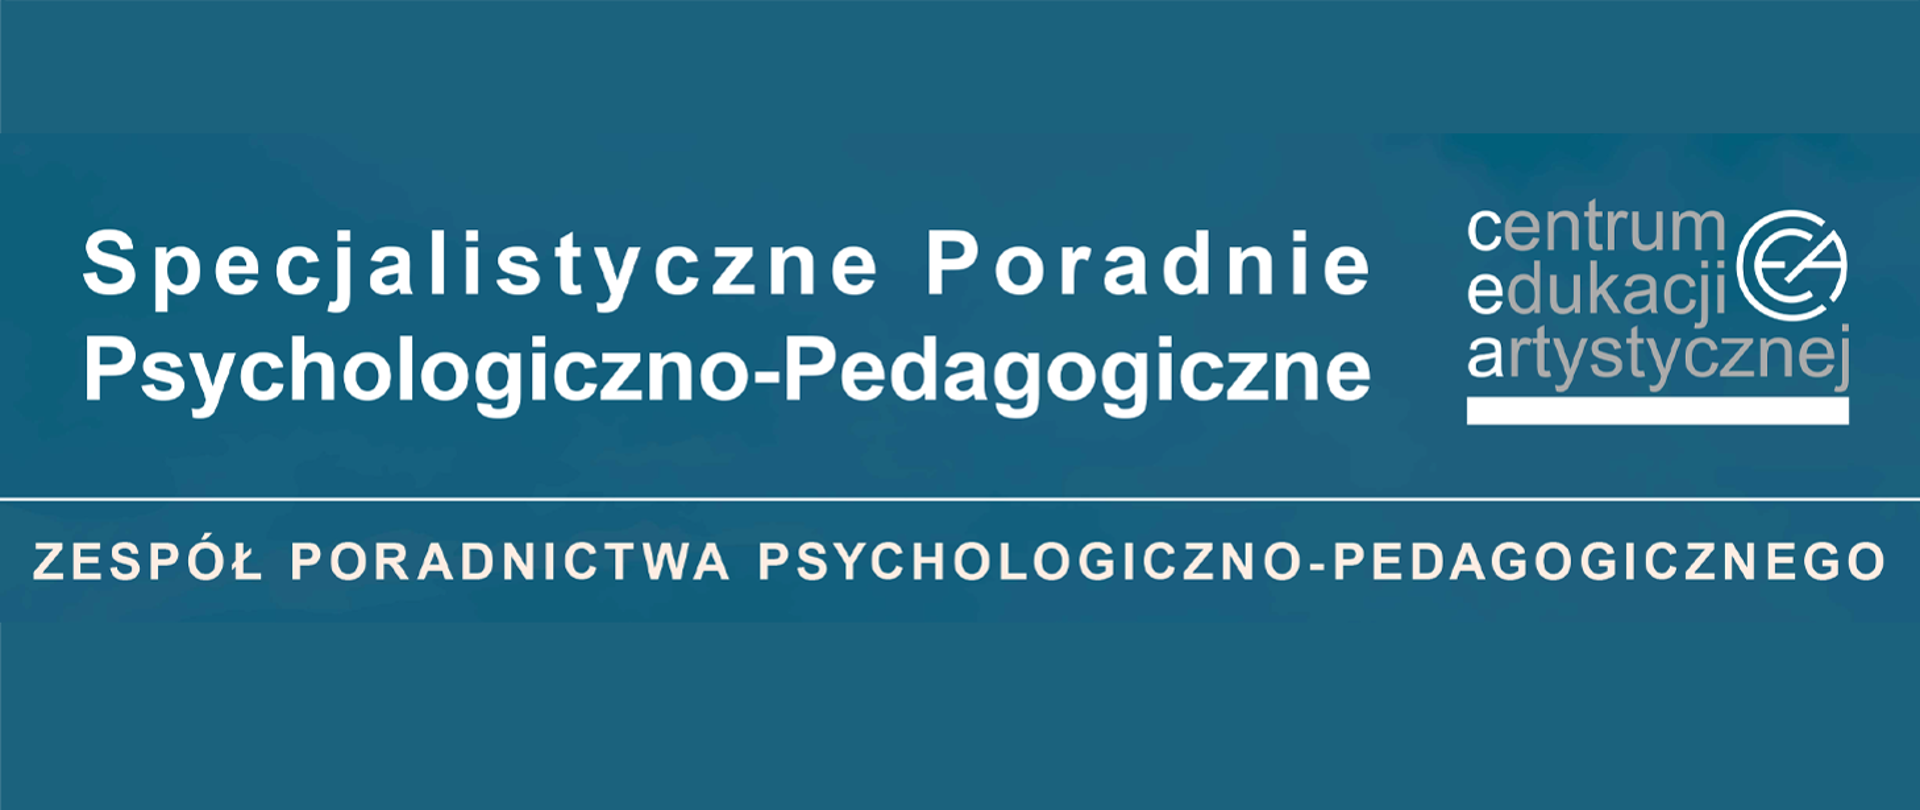 Na niebieskim tle napis Specjalistyczne Poradnie Psychologiczno- Pedagogiczne, po prawej logo Centrum Edukacji Artystycznej. W dolnej części napis Zespół Poradnictwa Psychologiczno- Pedagogicznego.